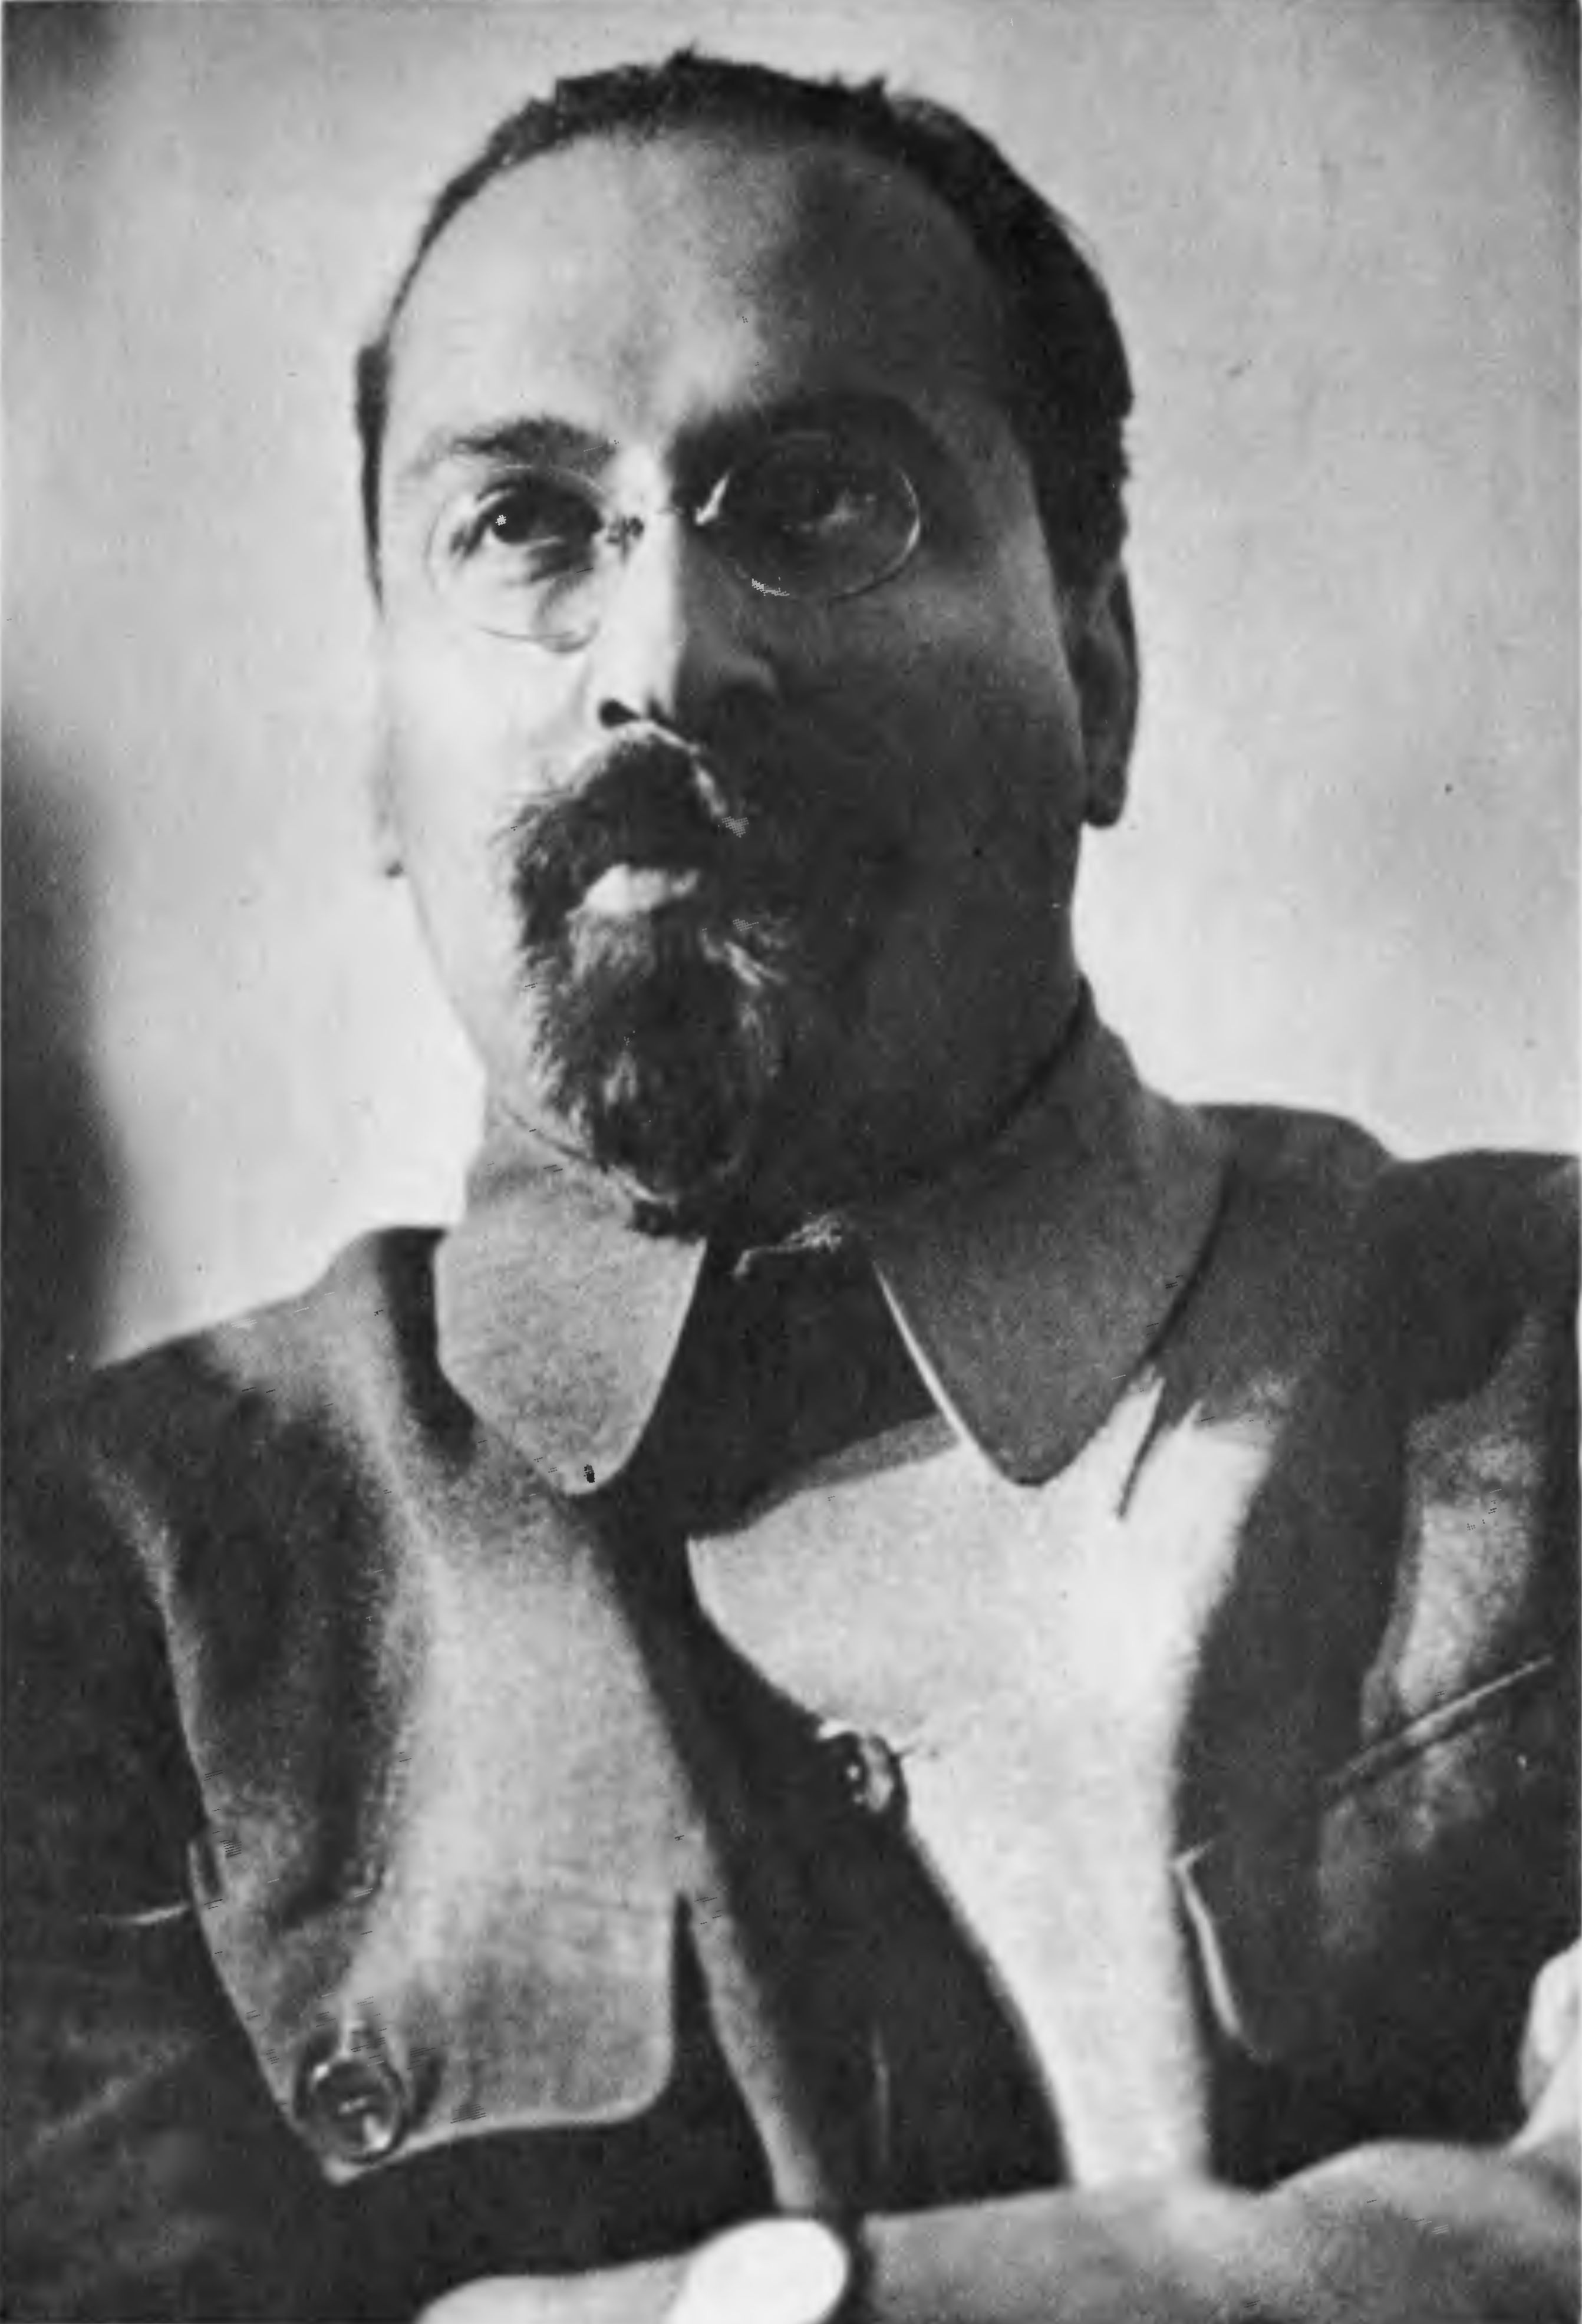 Л.М. Карахан (1889—1937). В мае 1937 года подвергся необоснованным репрессиям. Посмертно реабилитирован